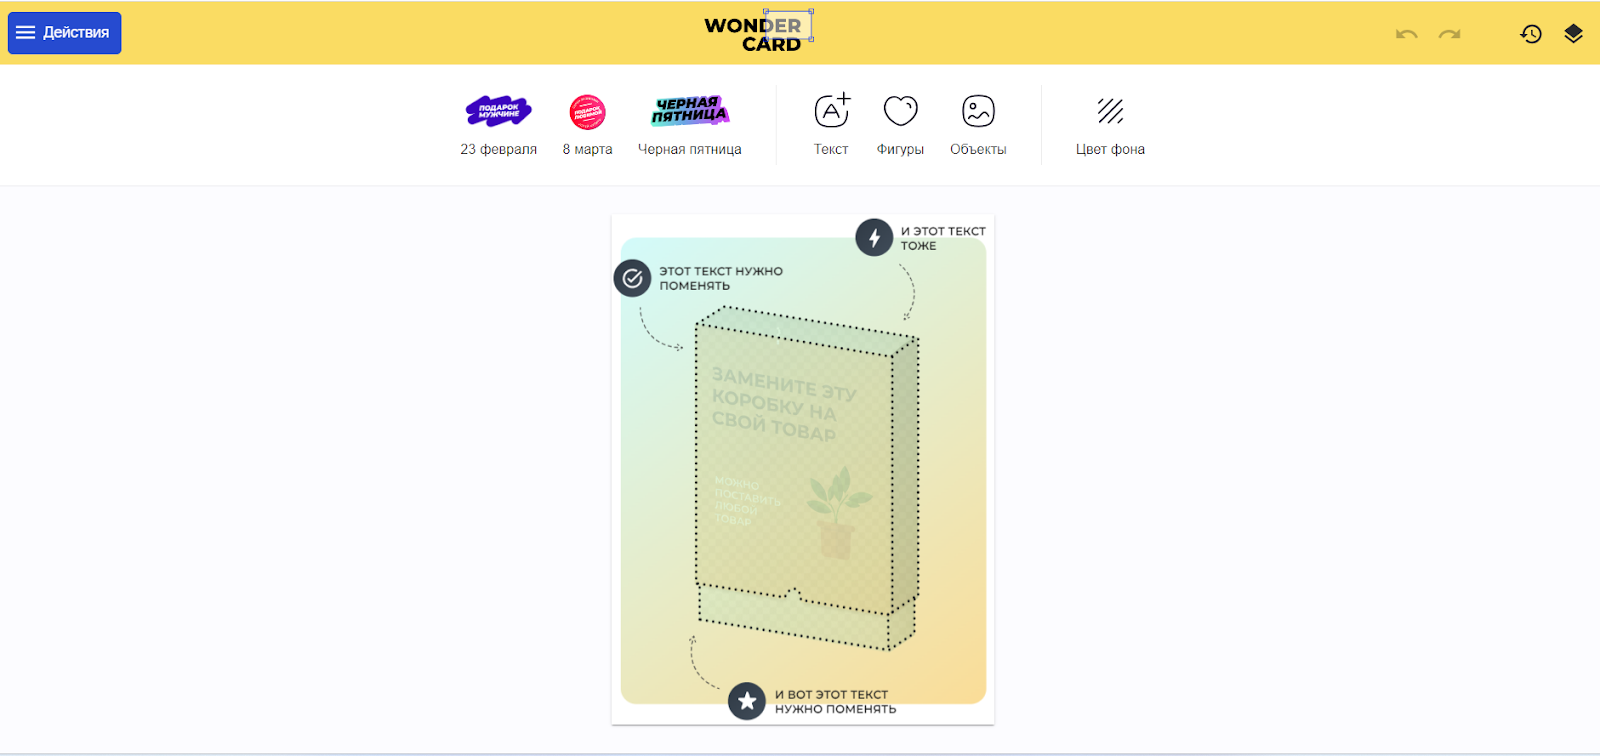 Wonder Card - конструктор инфографики для карточек товара на WB